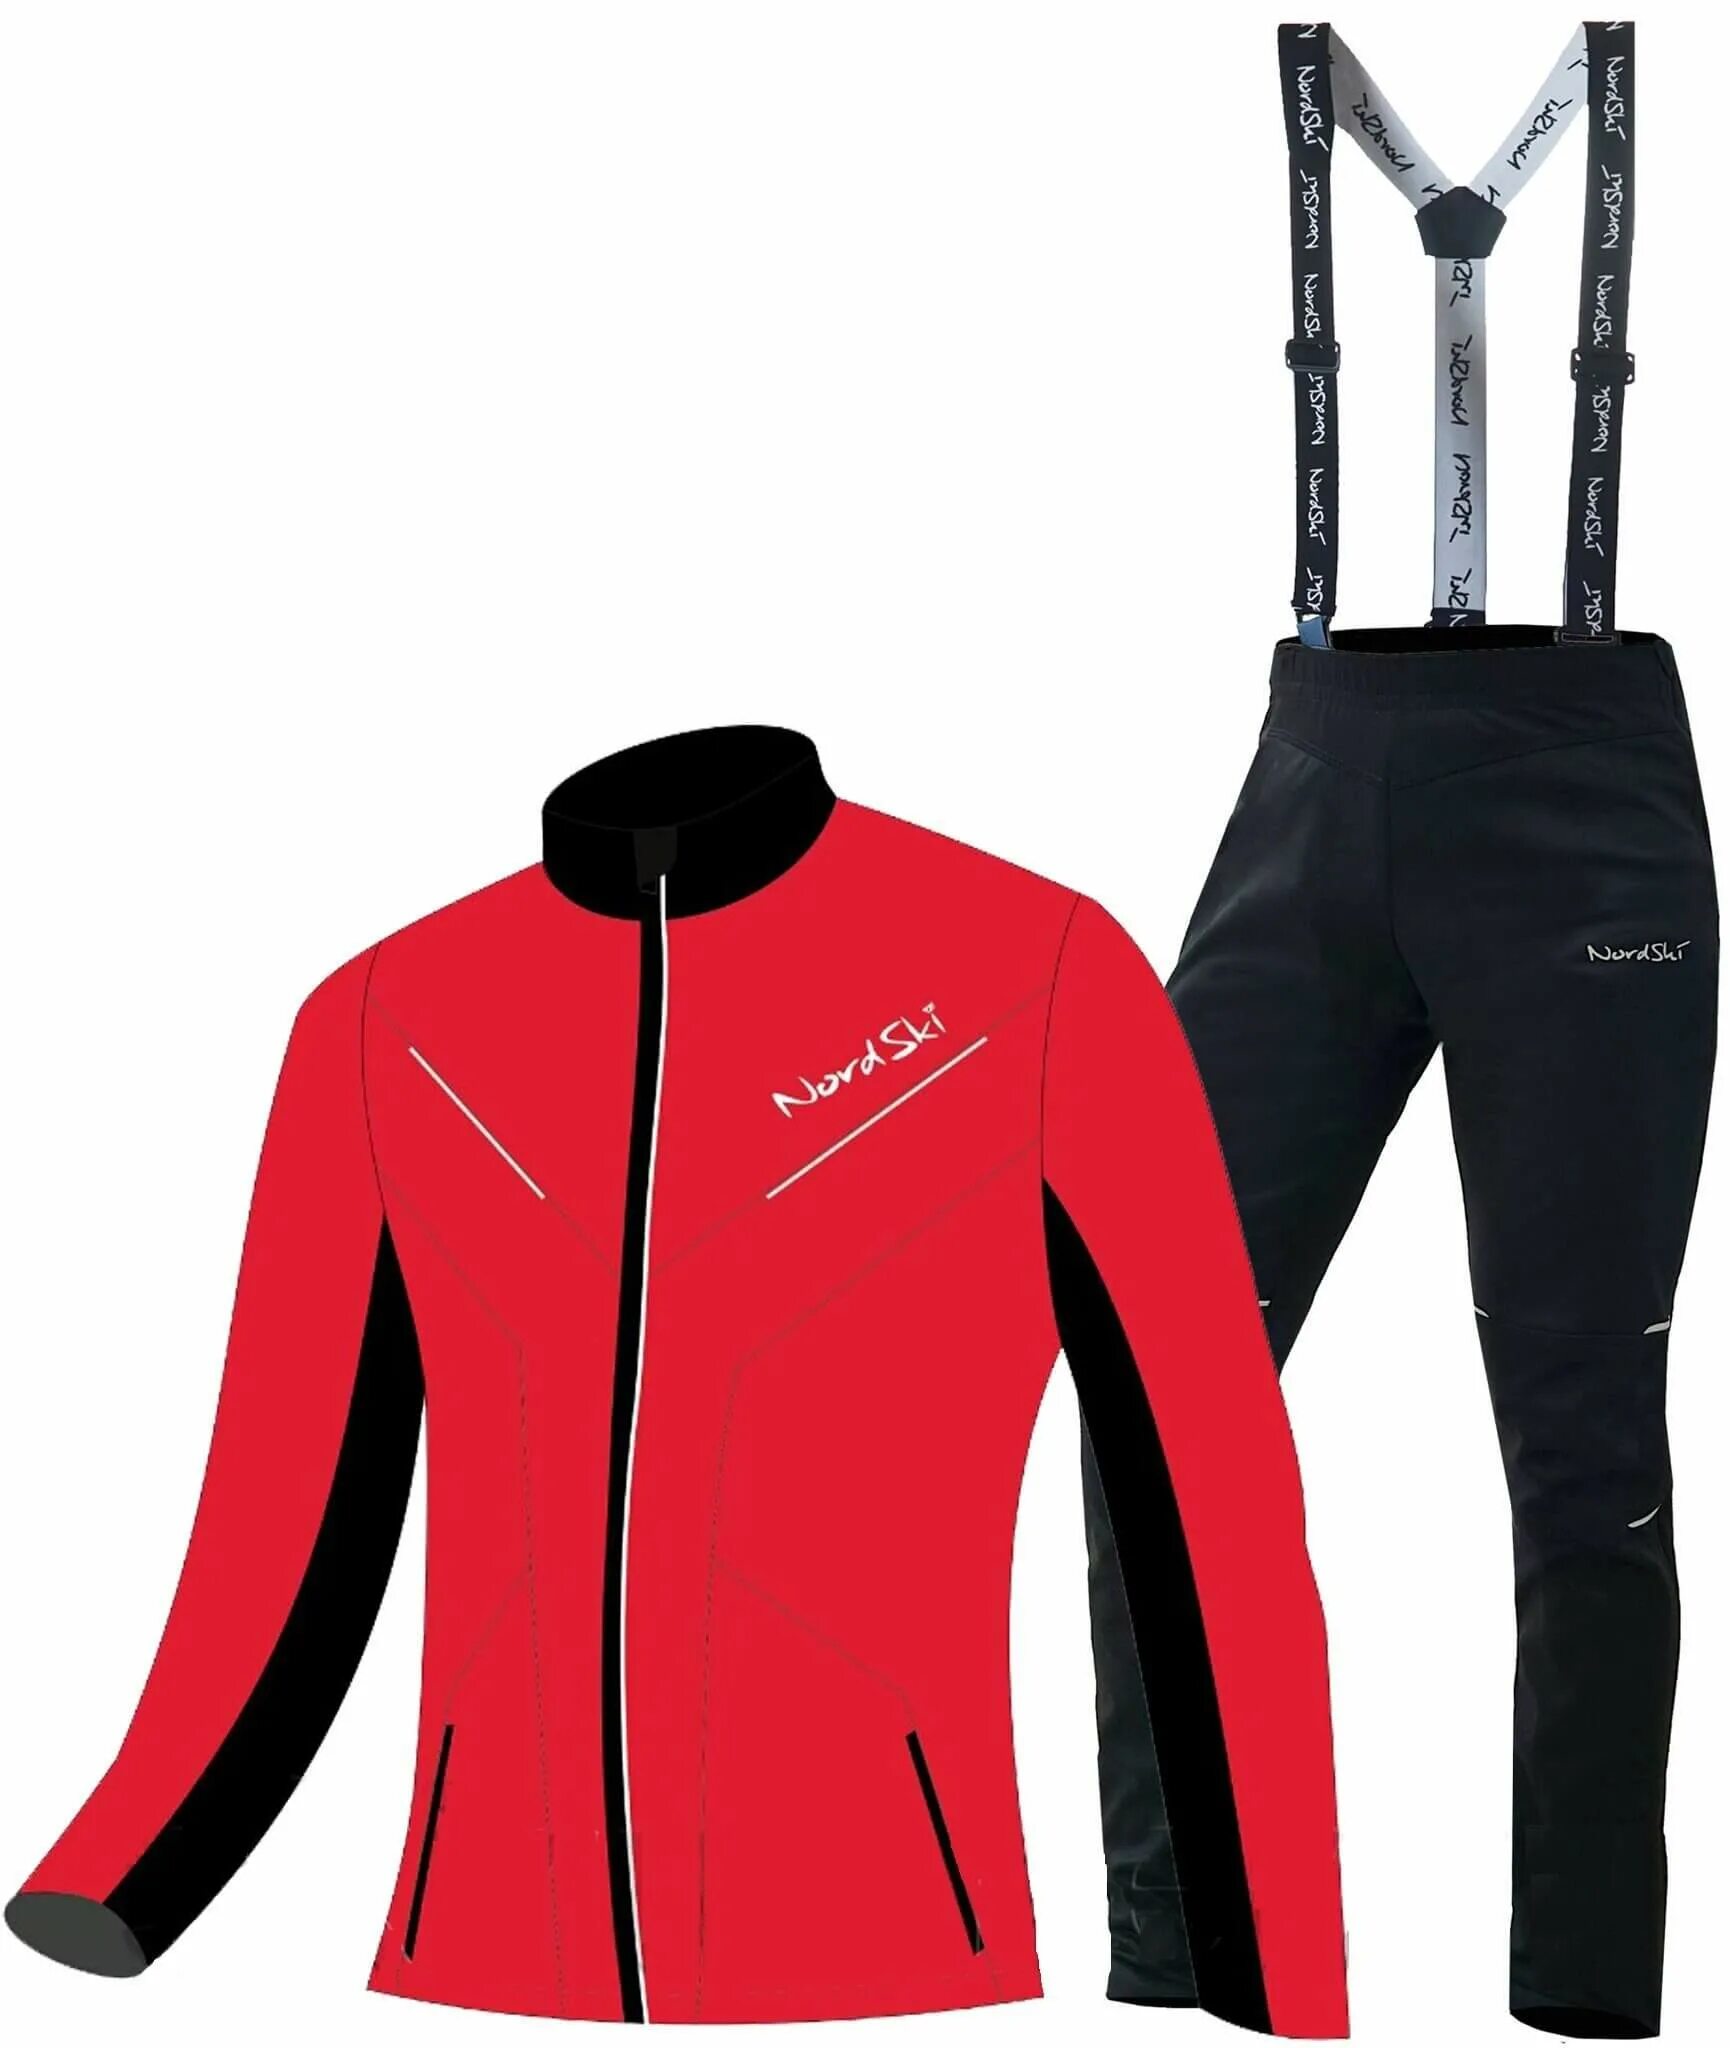 Разминочный костюм для лыжников. Разминочный костюм Nordski Premium. Лыжный костюм Nordski Premium. Нордски разминочный костюм XL. Разминочный лыжный костюм Nordski 152.